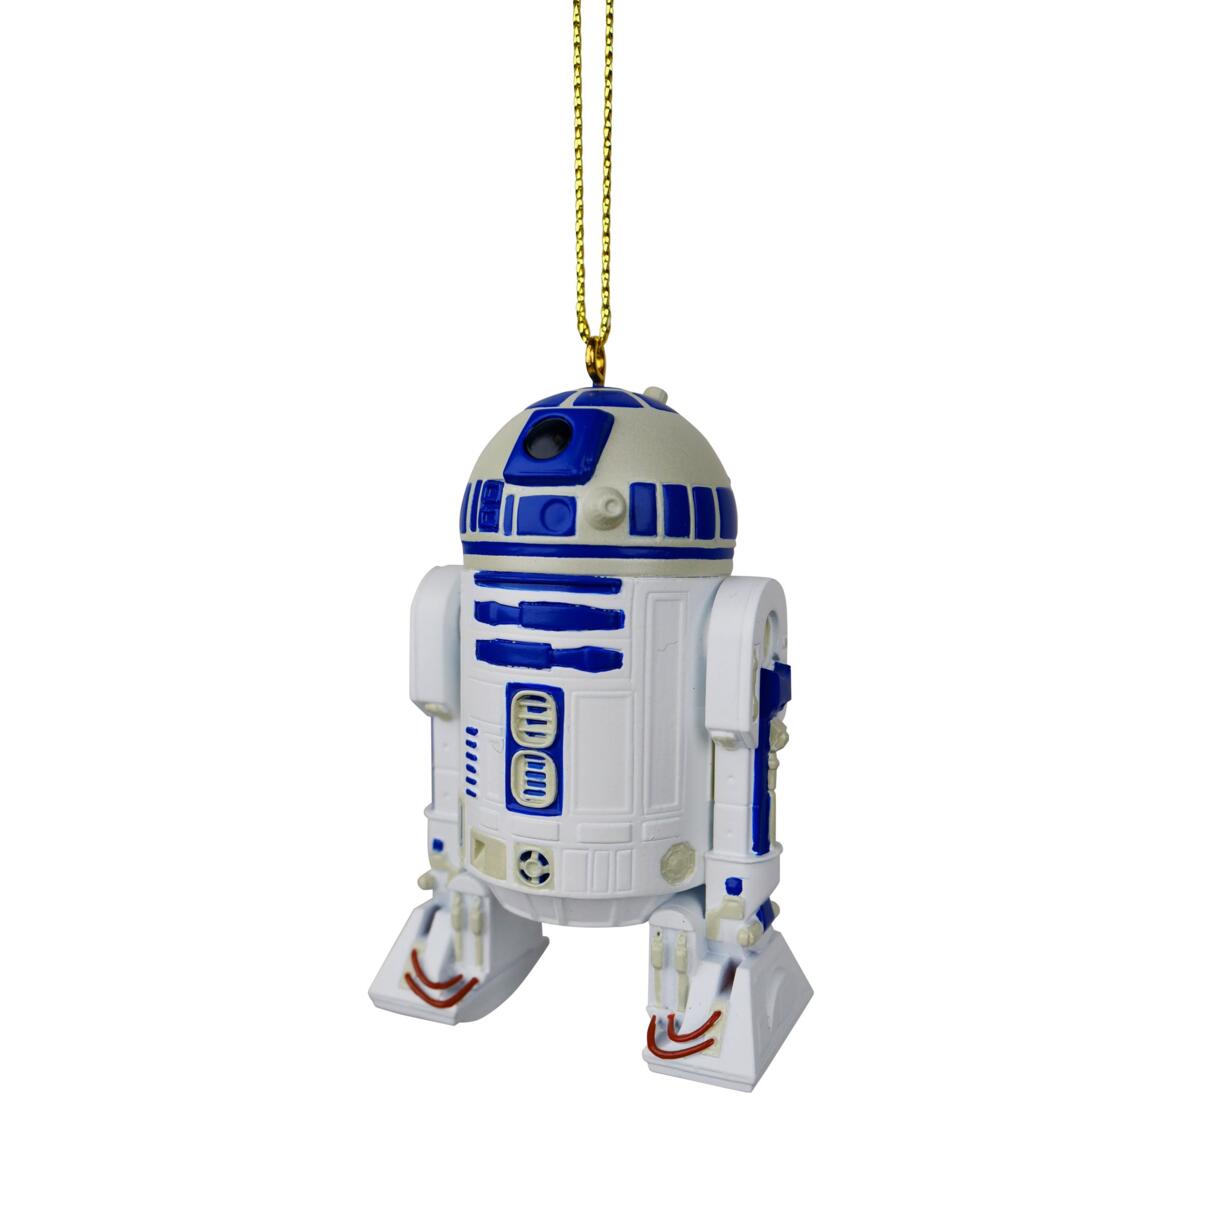 Feest hangdecoratie Disney Star Wars R2-D2 Blauw 1